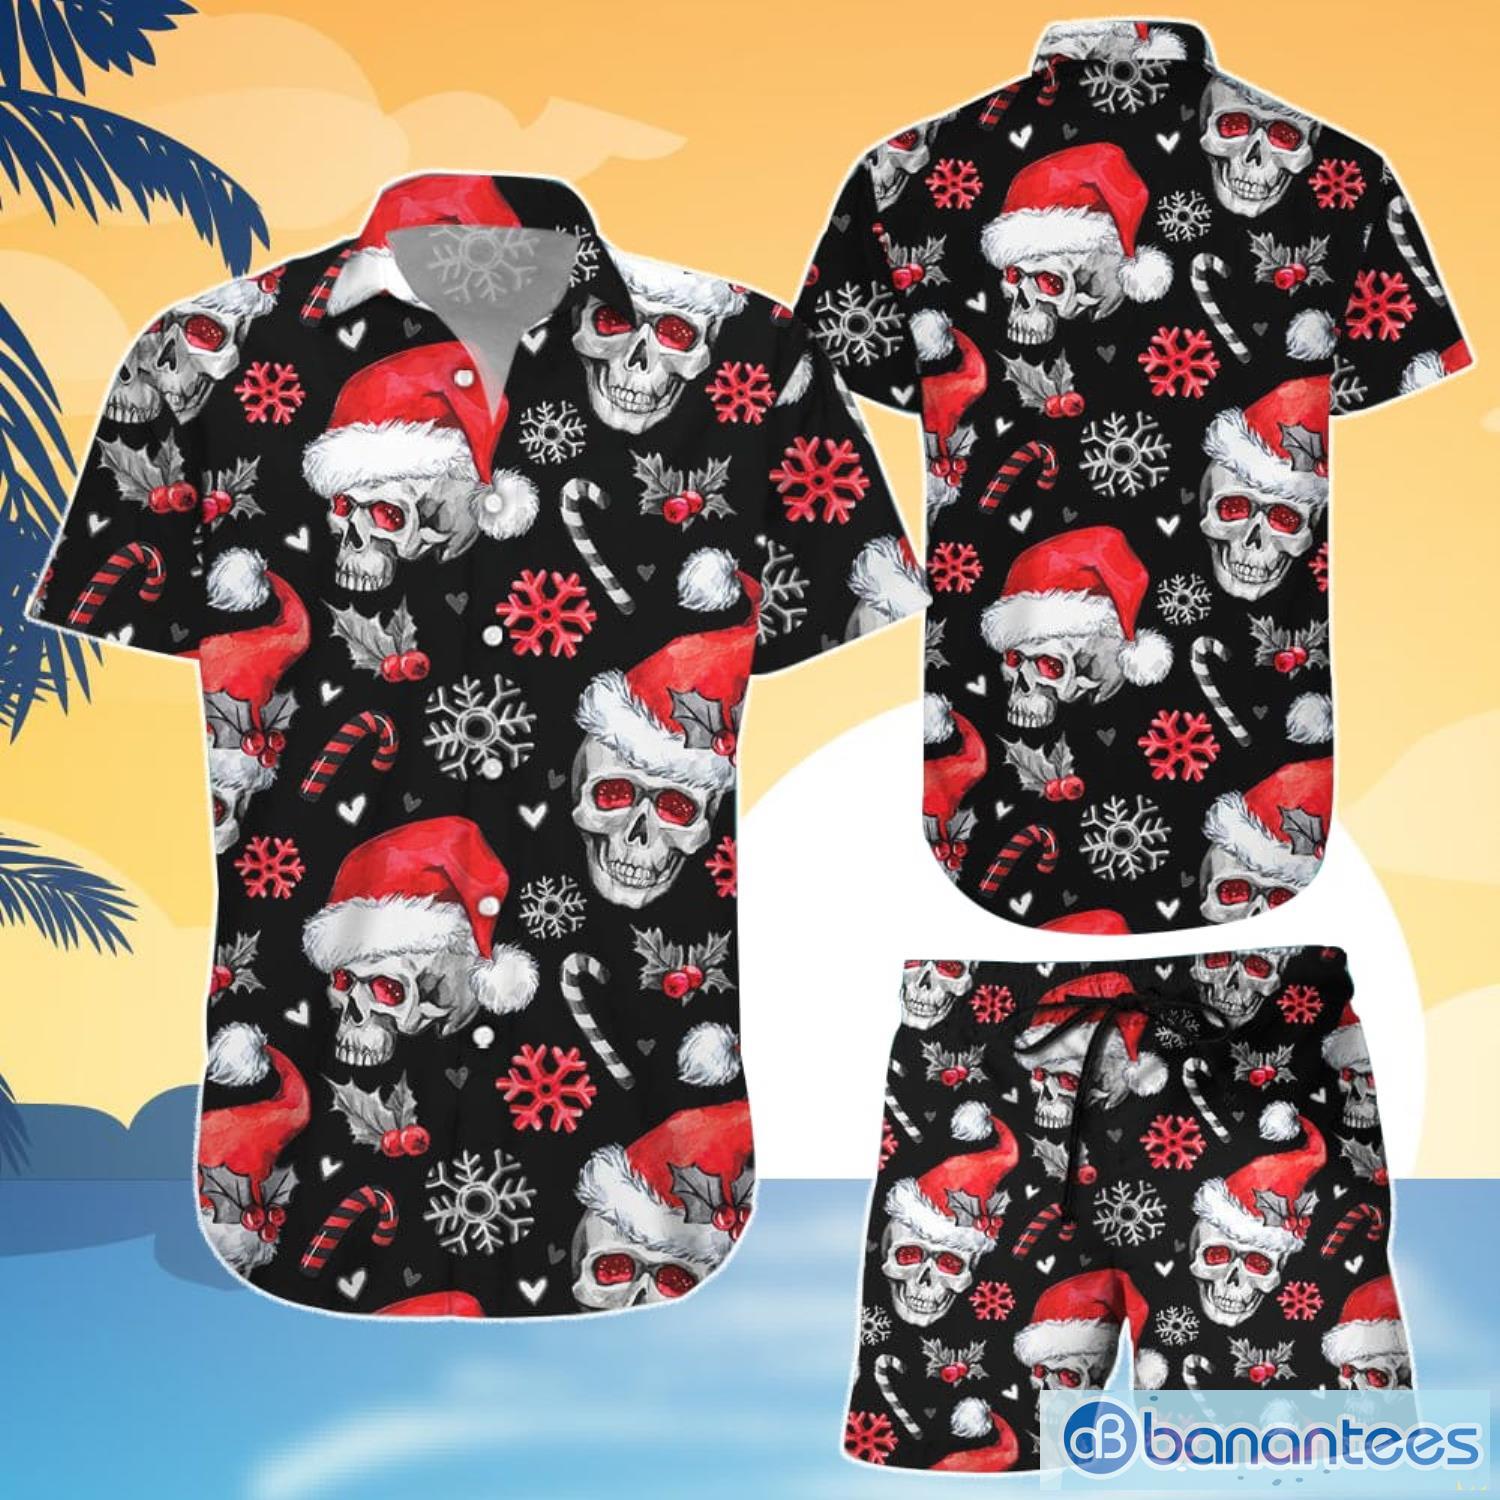 Christmas Skull Hawaiian Shirt And Shorts Christmas Skulls With Candy Canes Aloha Shirt Christmas Gifts For Men - Christmas Skull Hawaiian Shirt - Christmas Skulls With Candy Canes Aloha Shirt - Christmas Gifts For Men_1